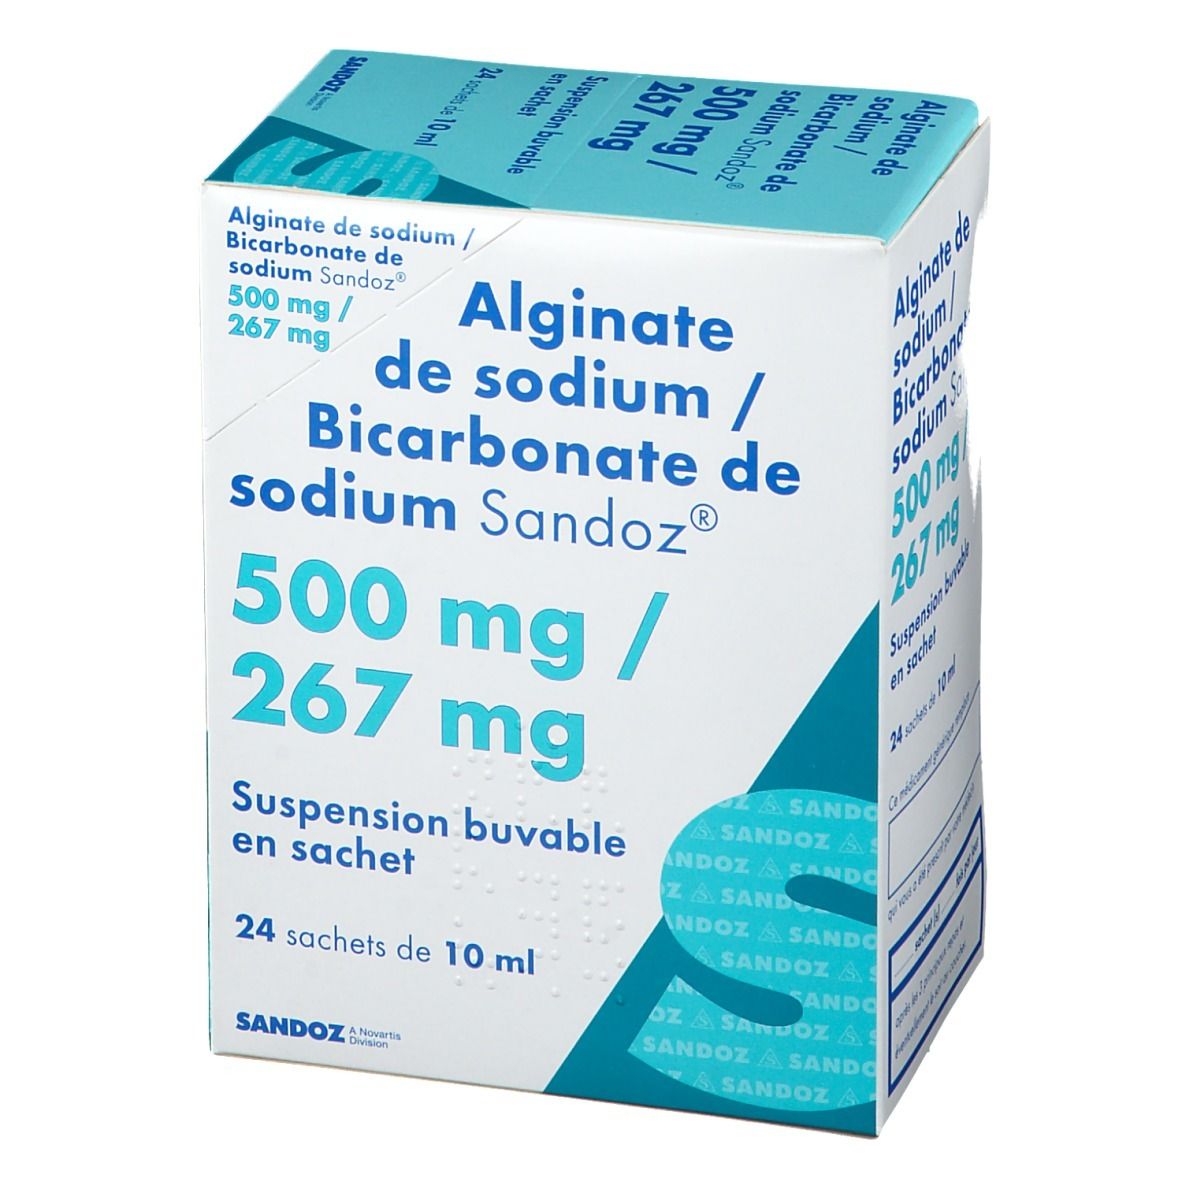 Alginate de sodium /bicarbonate de sodium